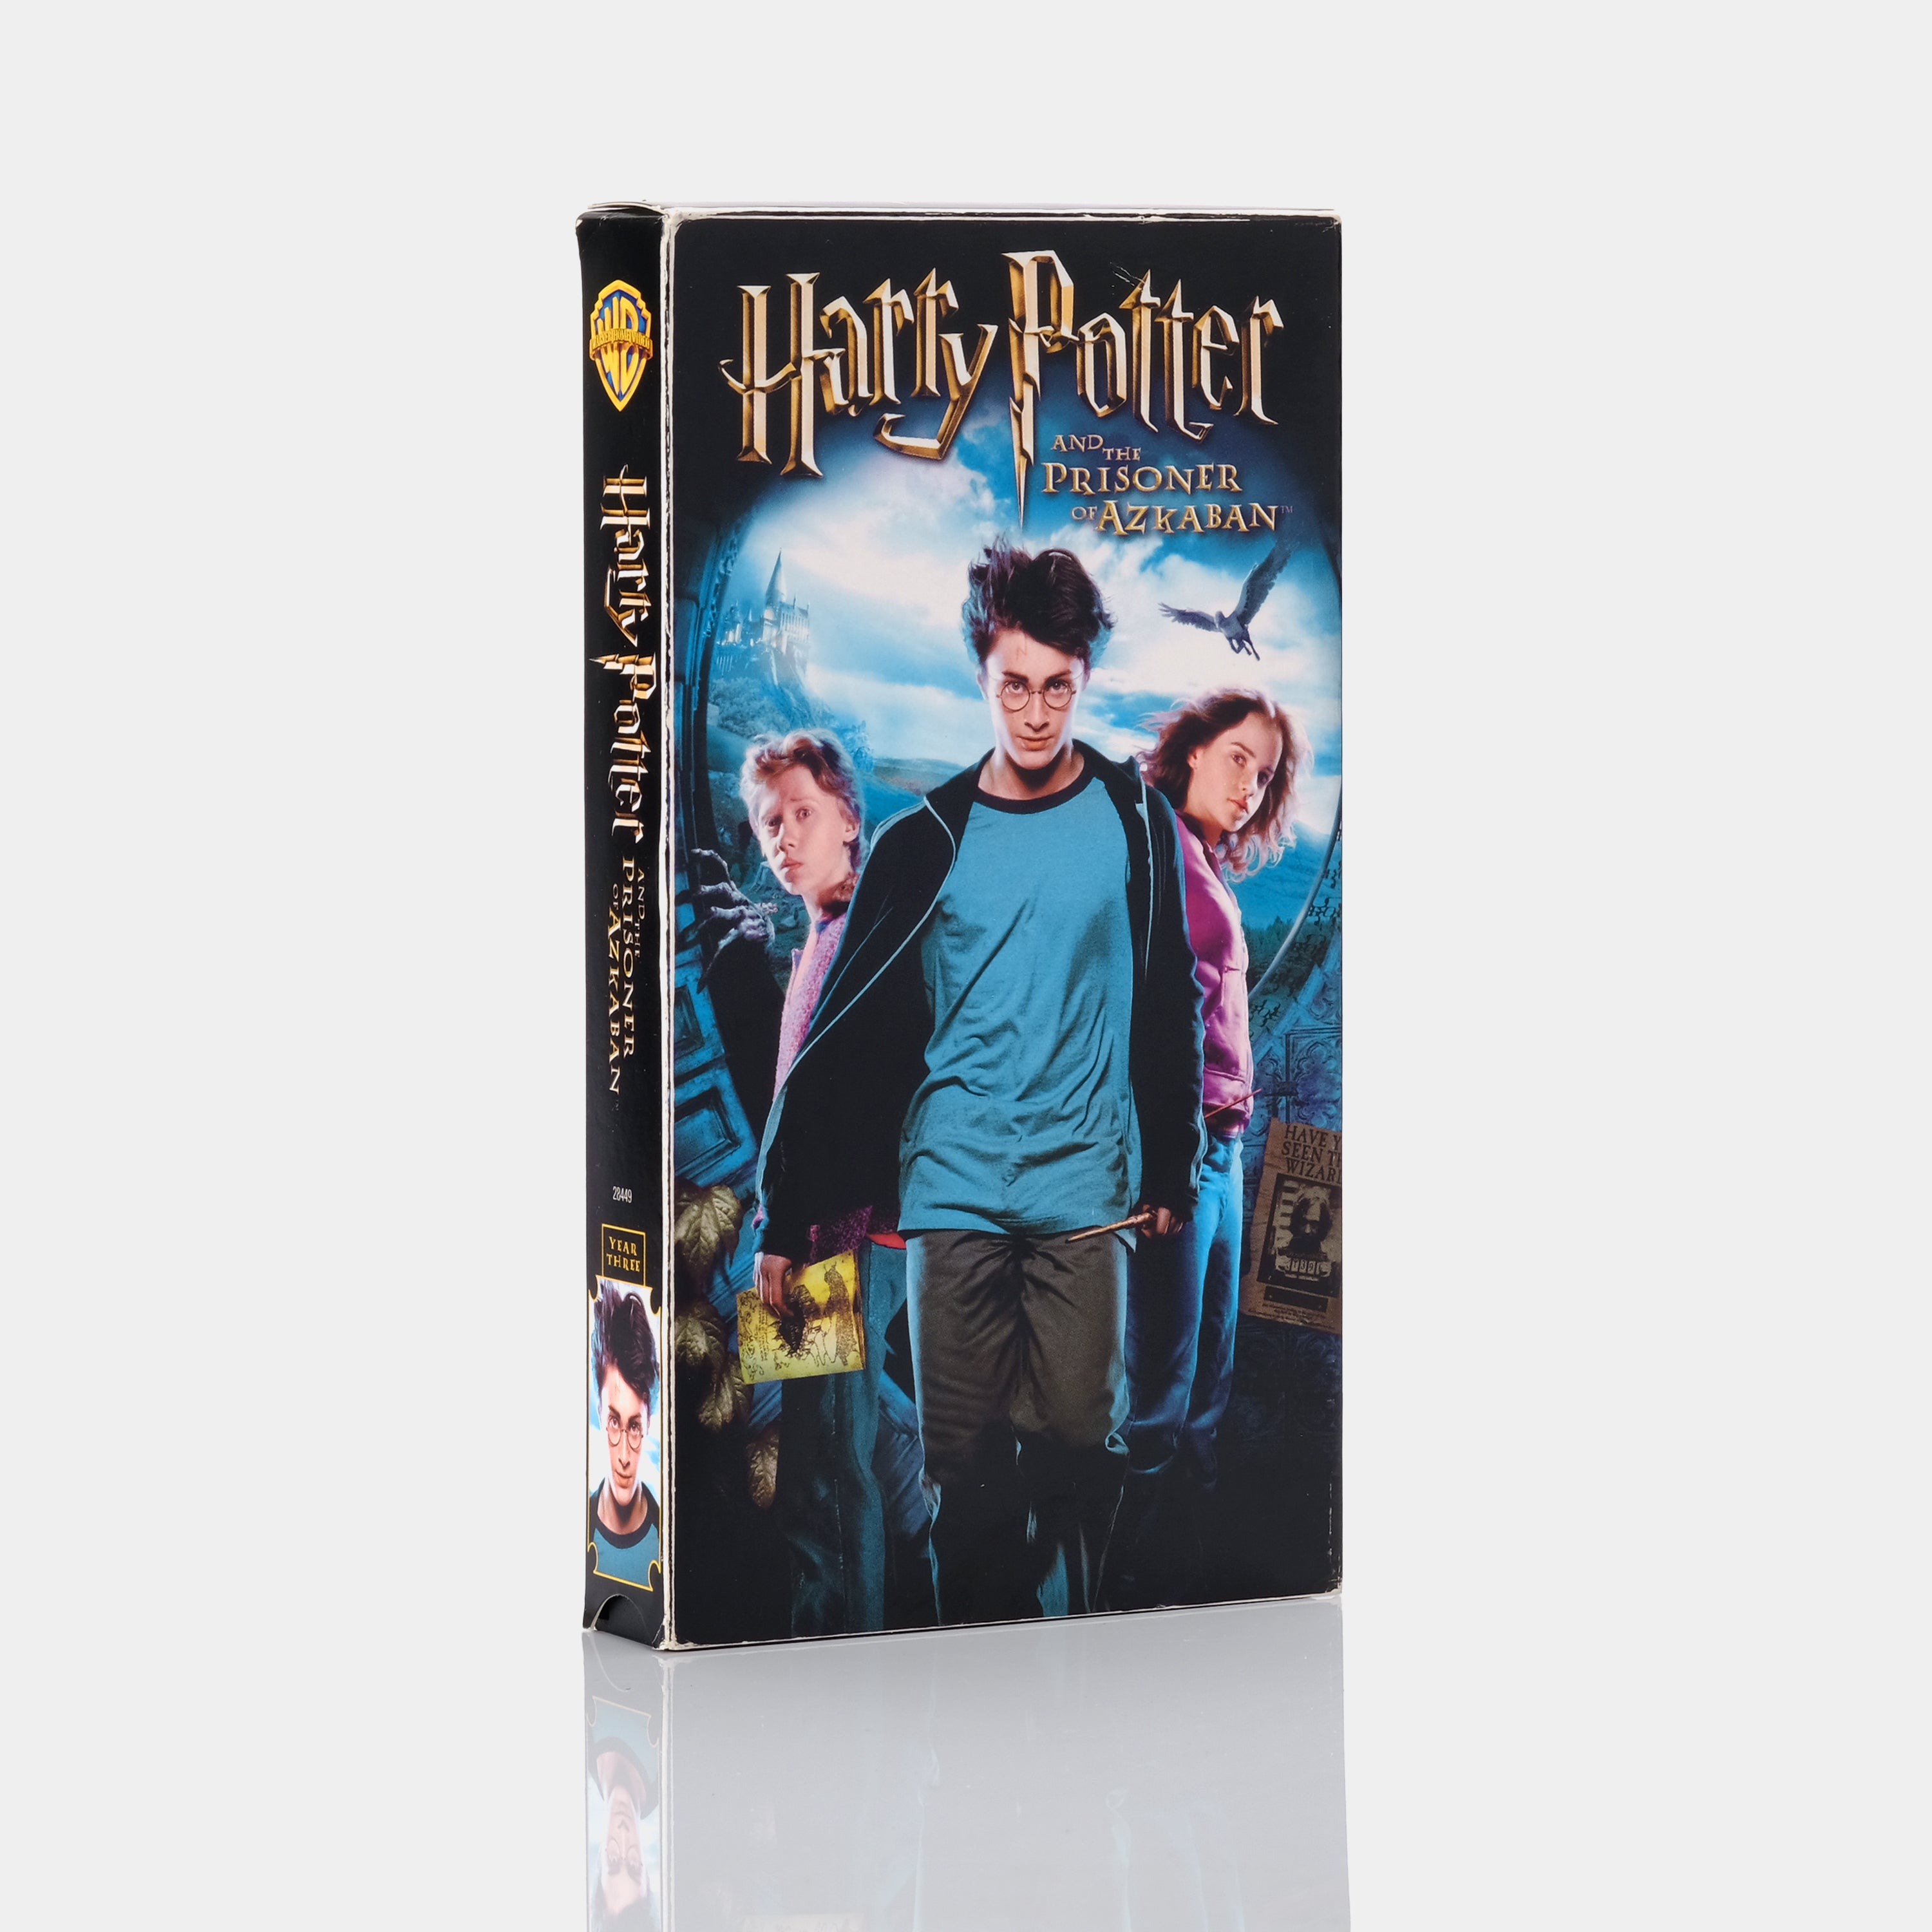 Harry Potter and the Prisoner of Azkaban VHS Tape